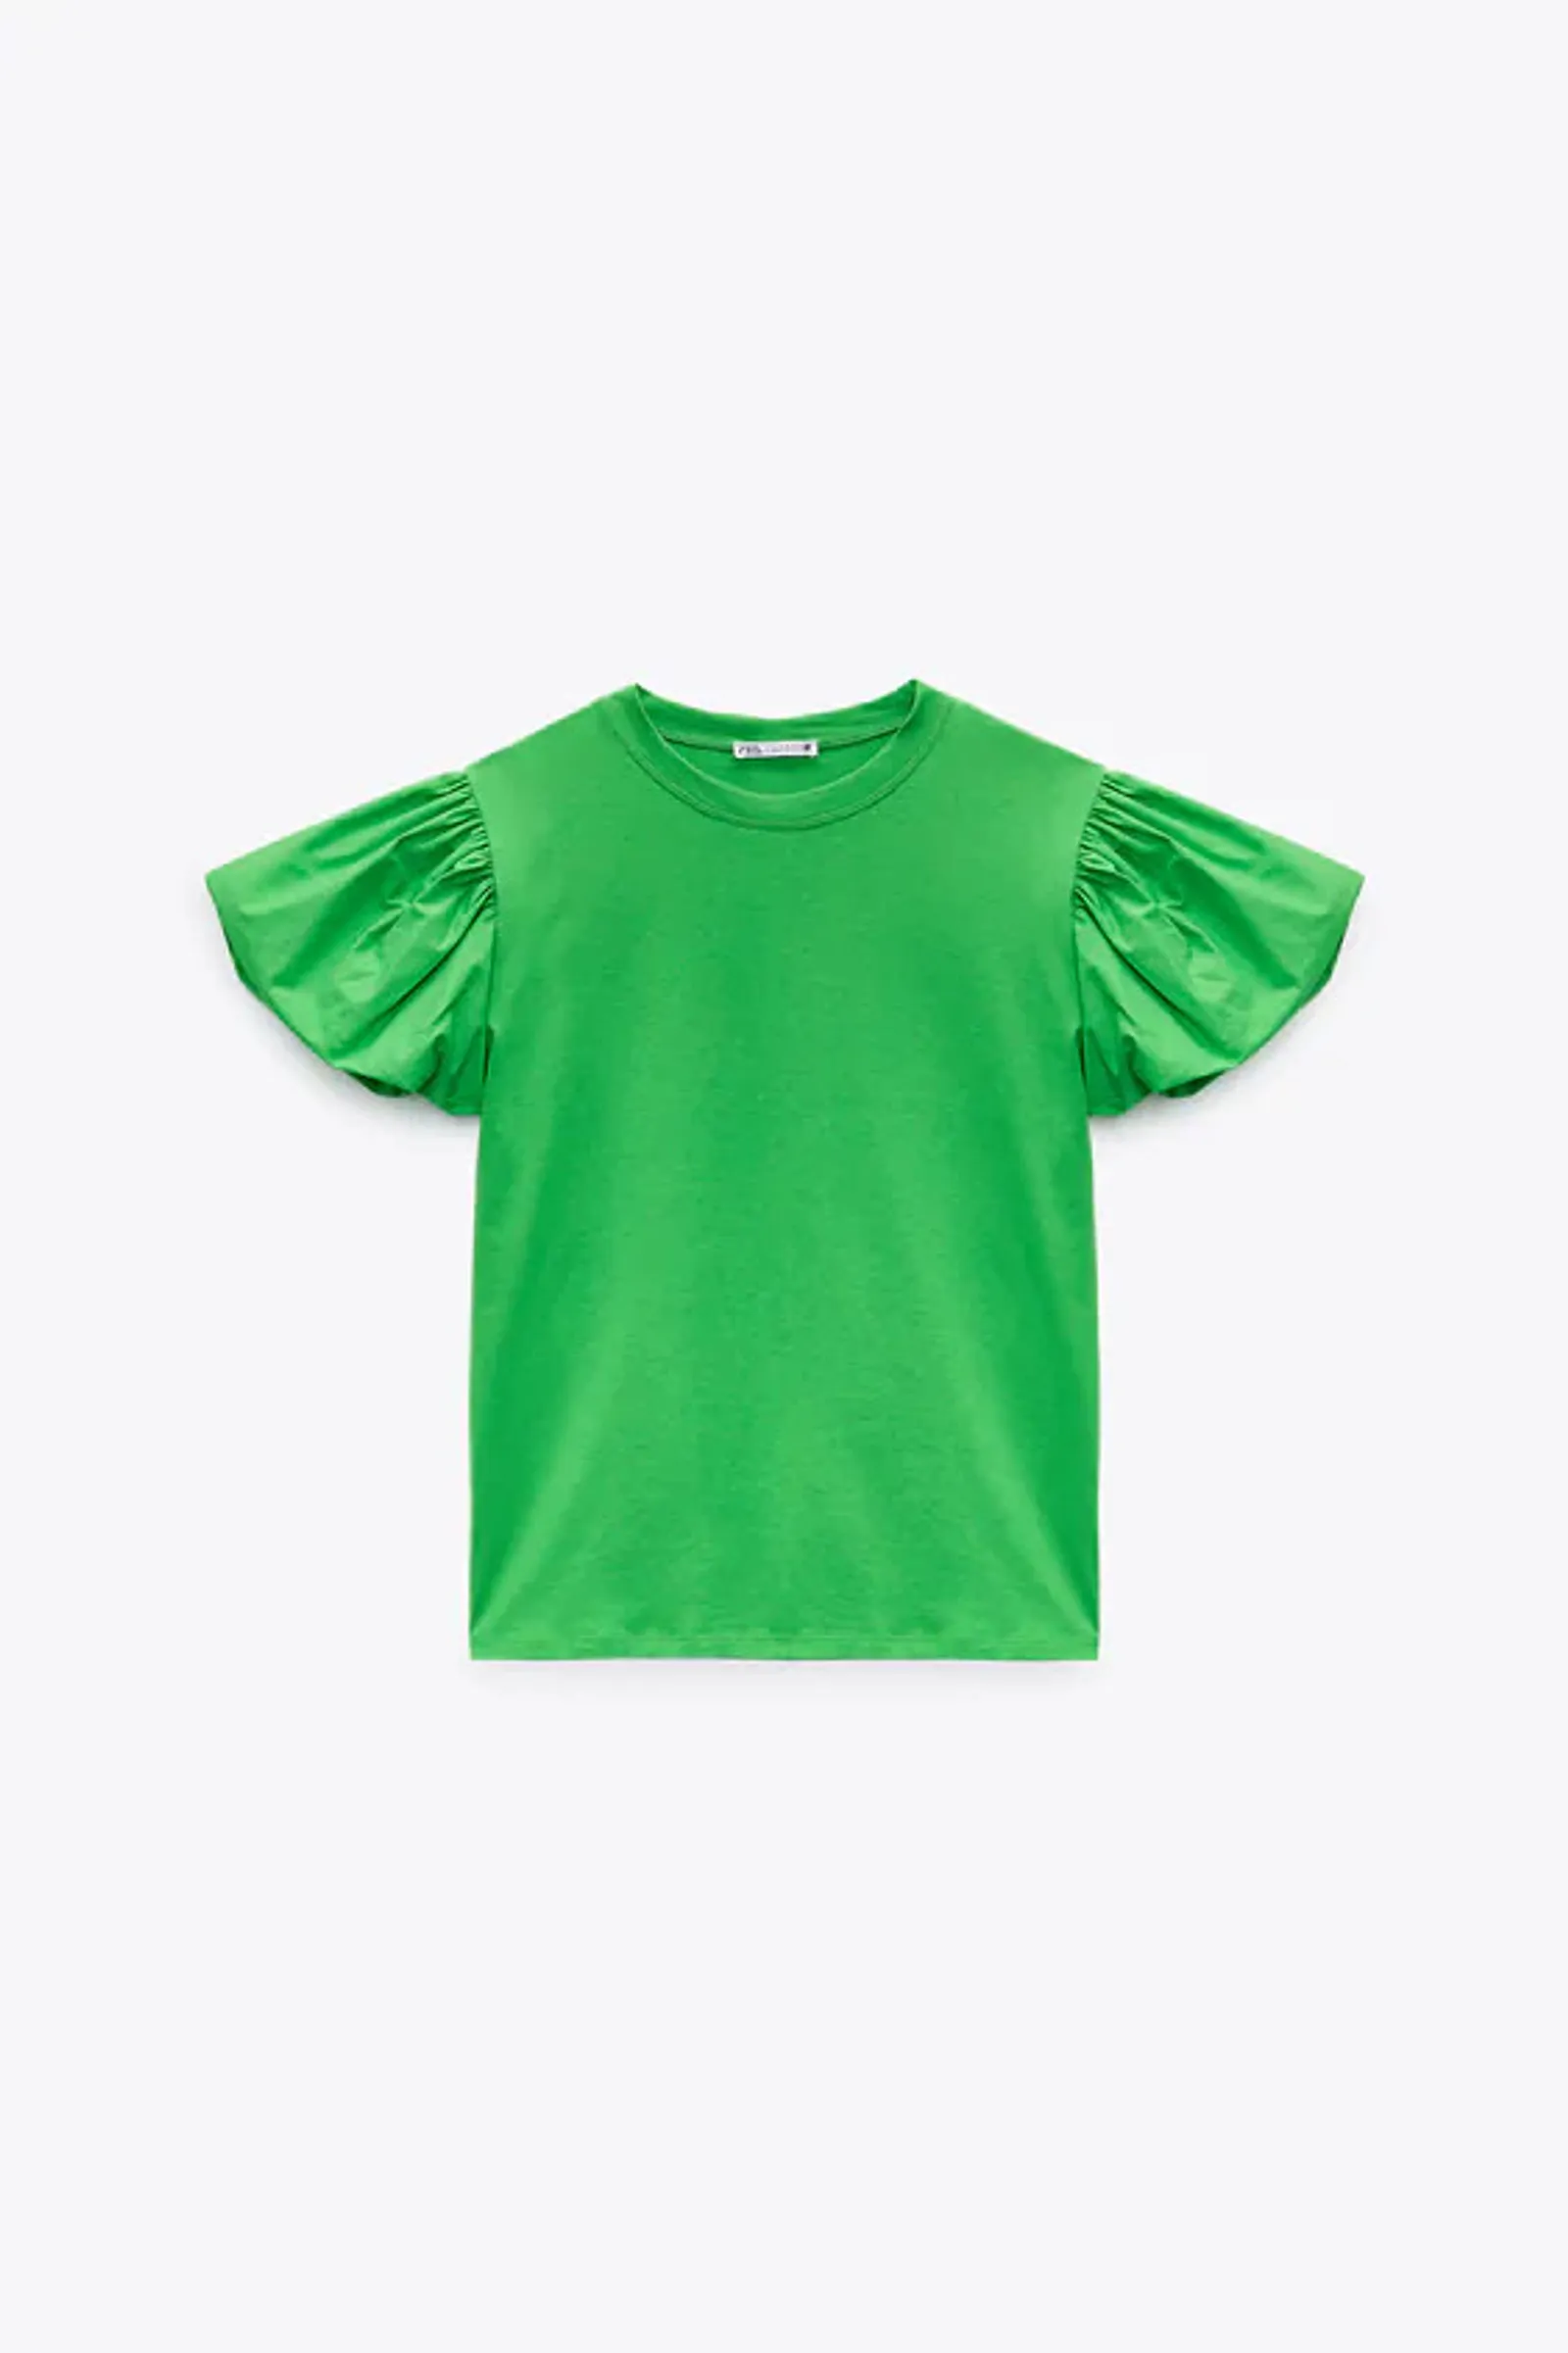 #PopbelaOOTD: 10 Rekomendasi T-shirt yang Bisa Buat Gaya Beda Drastis